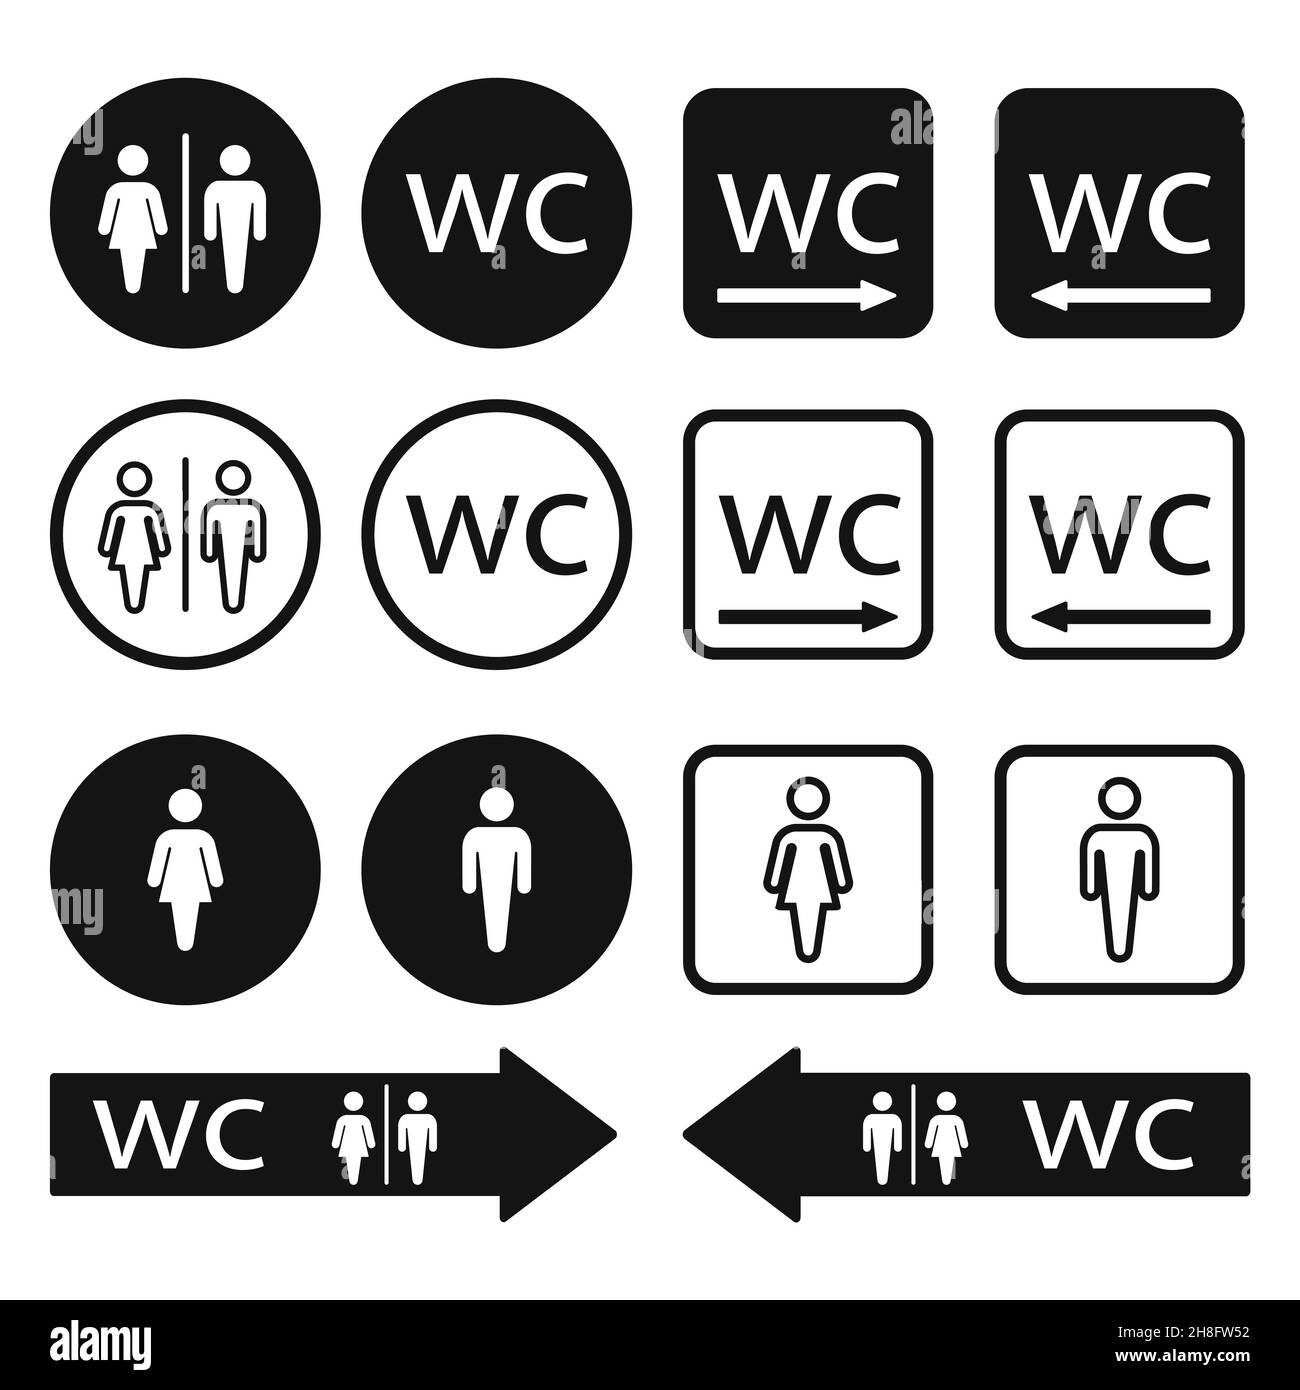 Icônes WC WC définies.Affiches de toilettes pour hommes et femmes.Illustration vectorielle du symbole de flèche de direction WC. Illustration de Vecteur